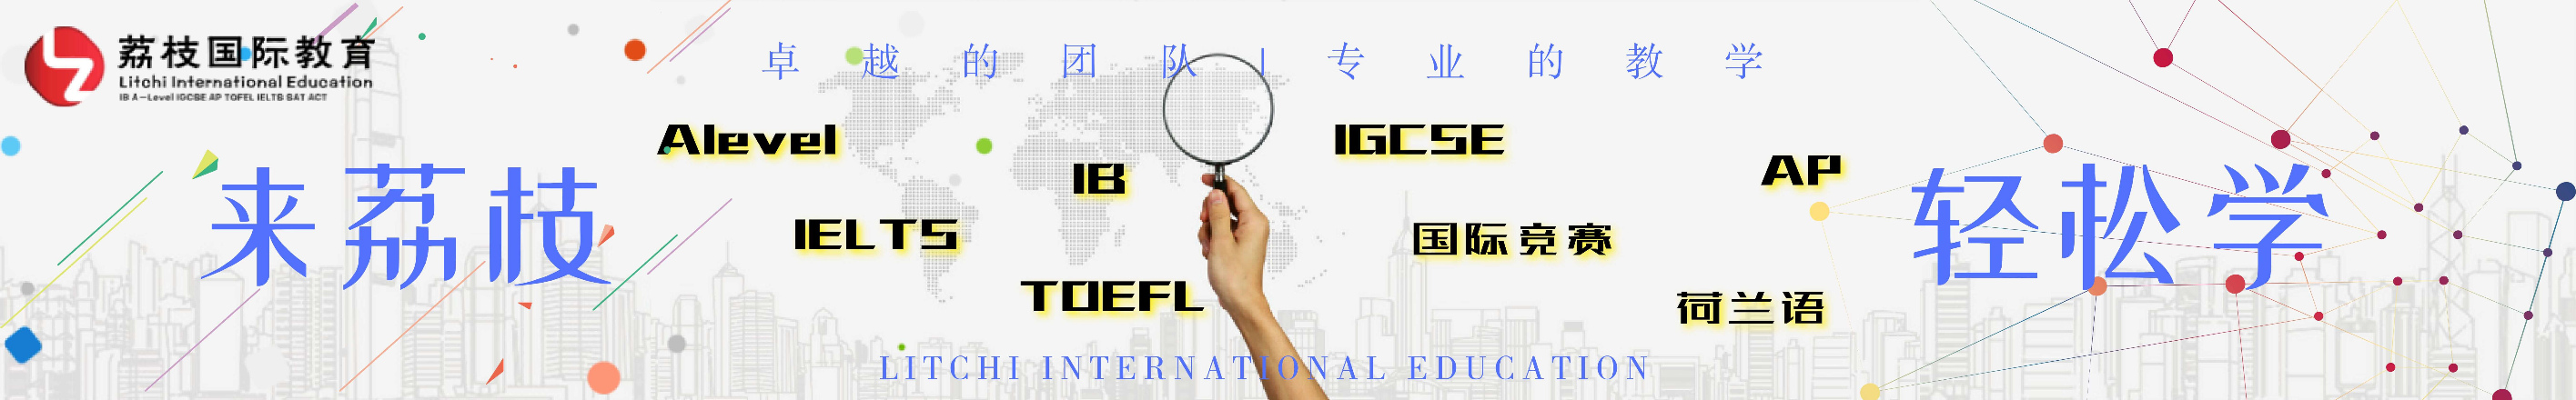 上海荔枝国际教育